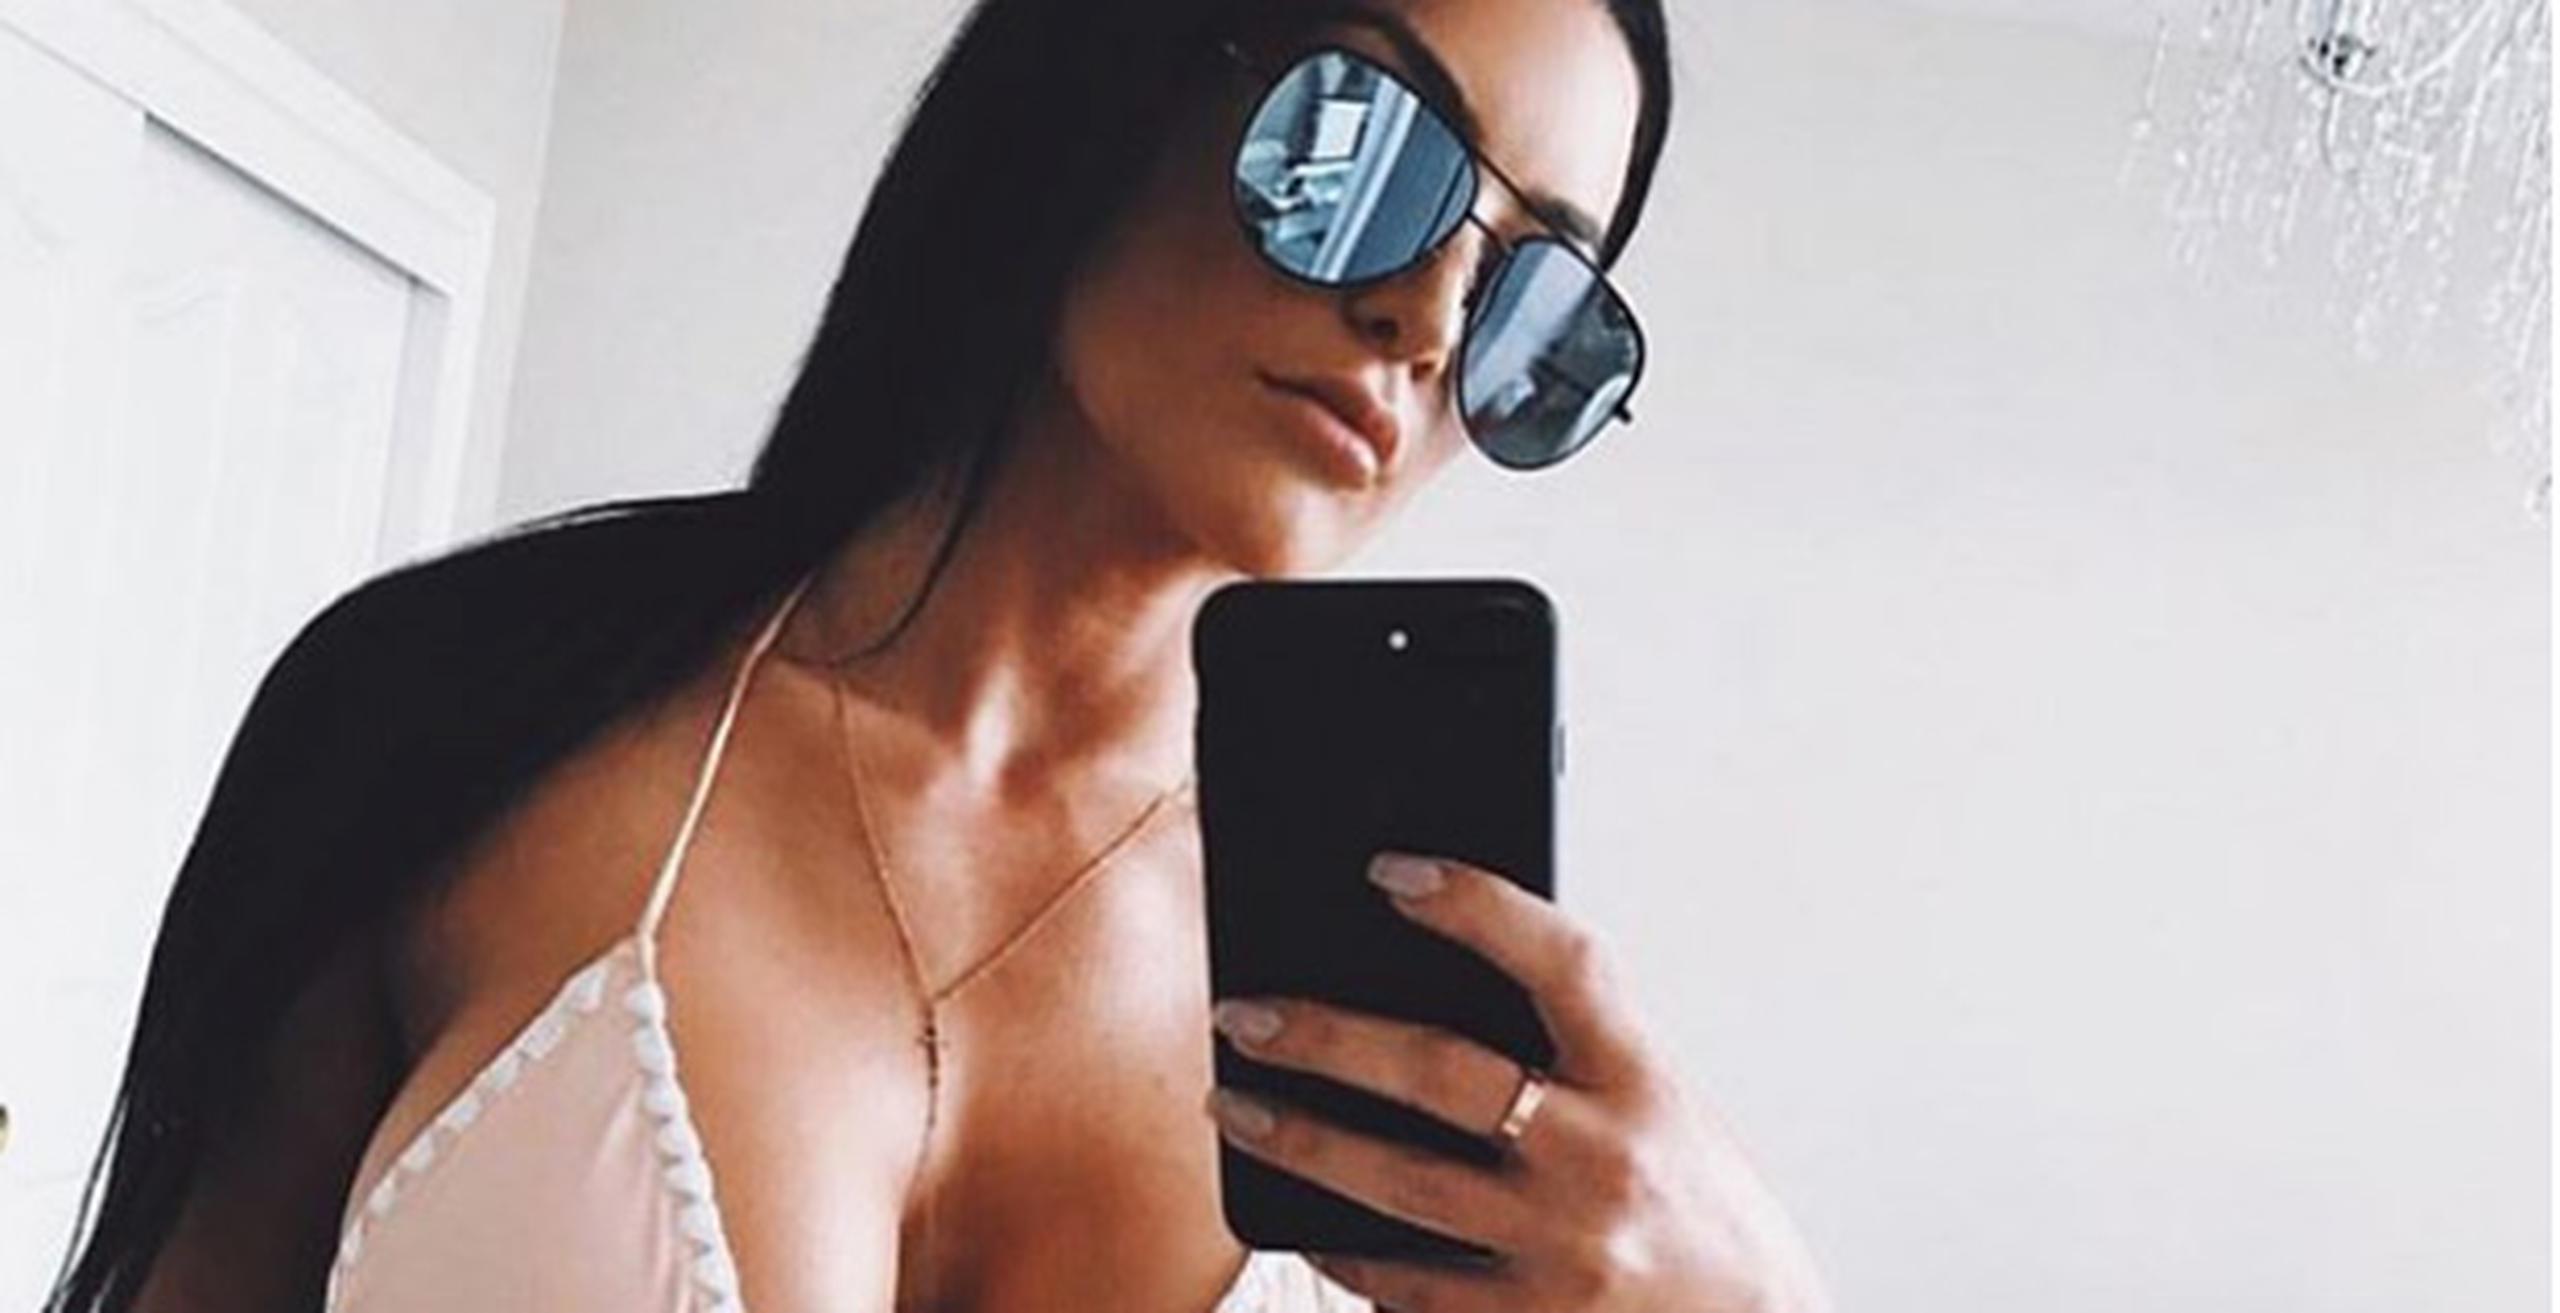 La también modelo de fitness ahora está muy activa como diseñadora de modas, pero dice que todavía está en una batalla constante contra el alcoholismo. (Instagram)